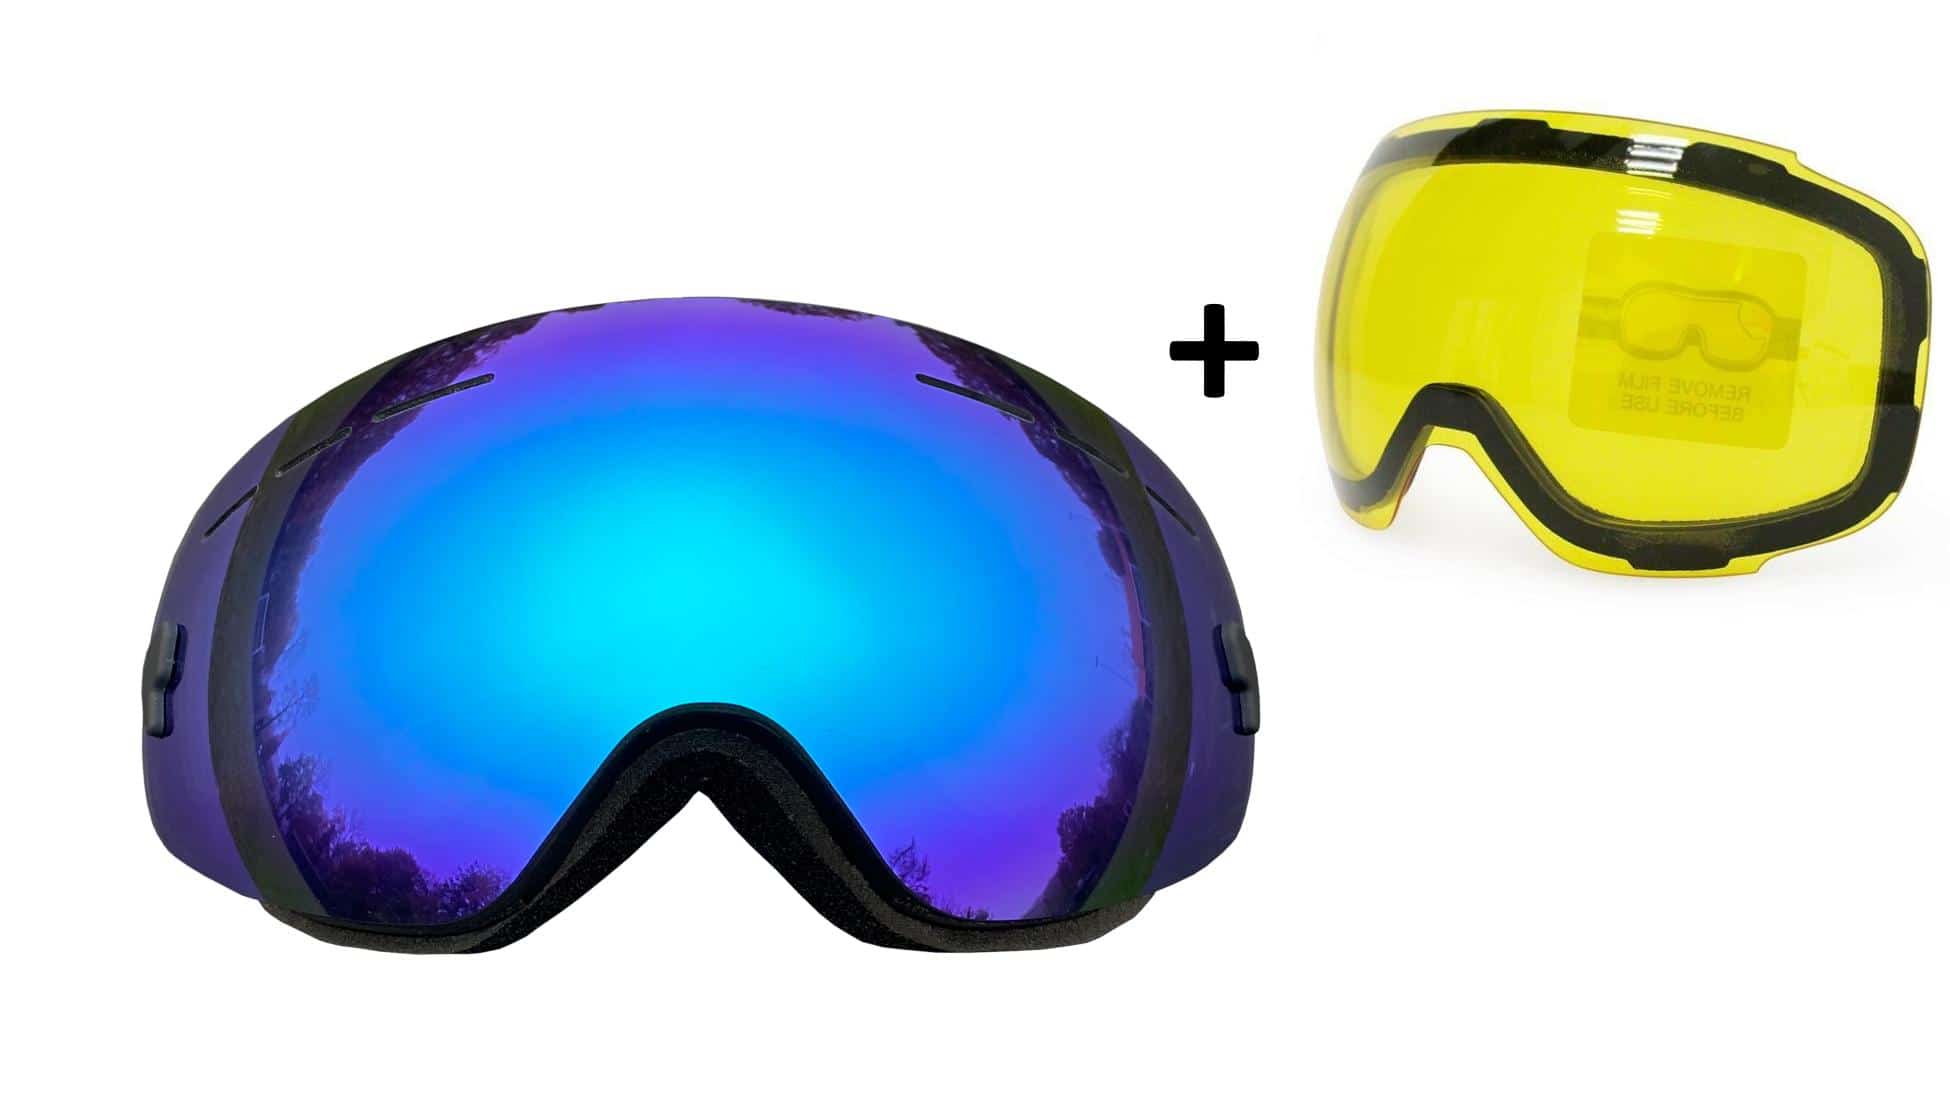 5one® Alpine 2 kinder skibril - Blue revo + gele lens - antic-ondens